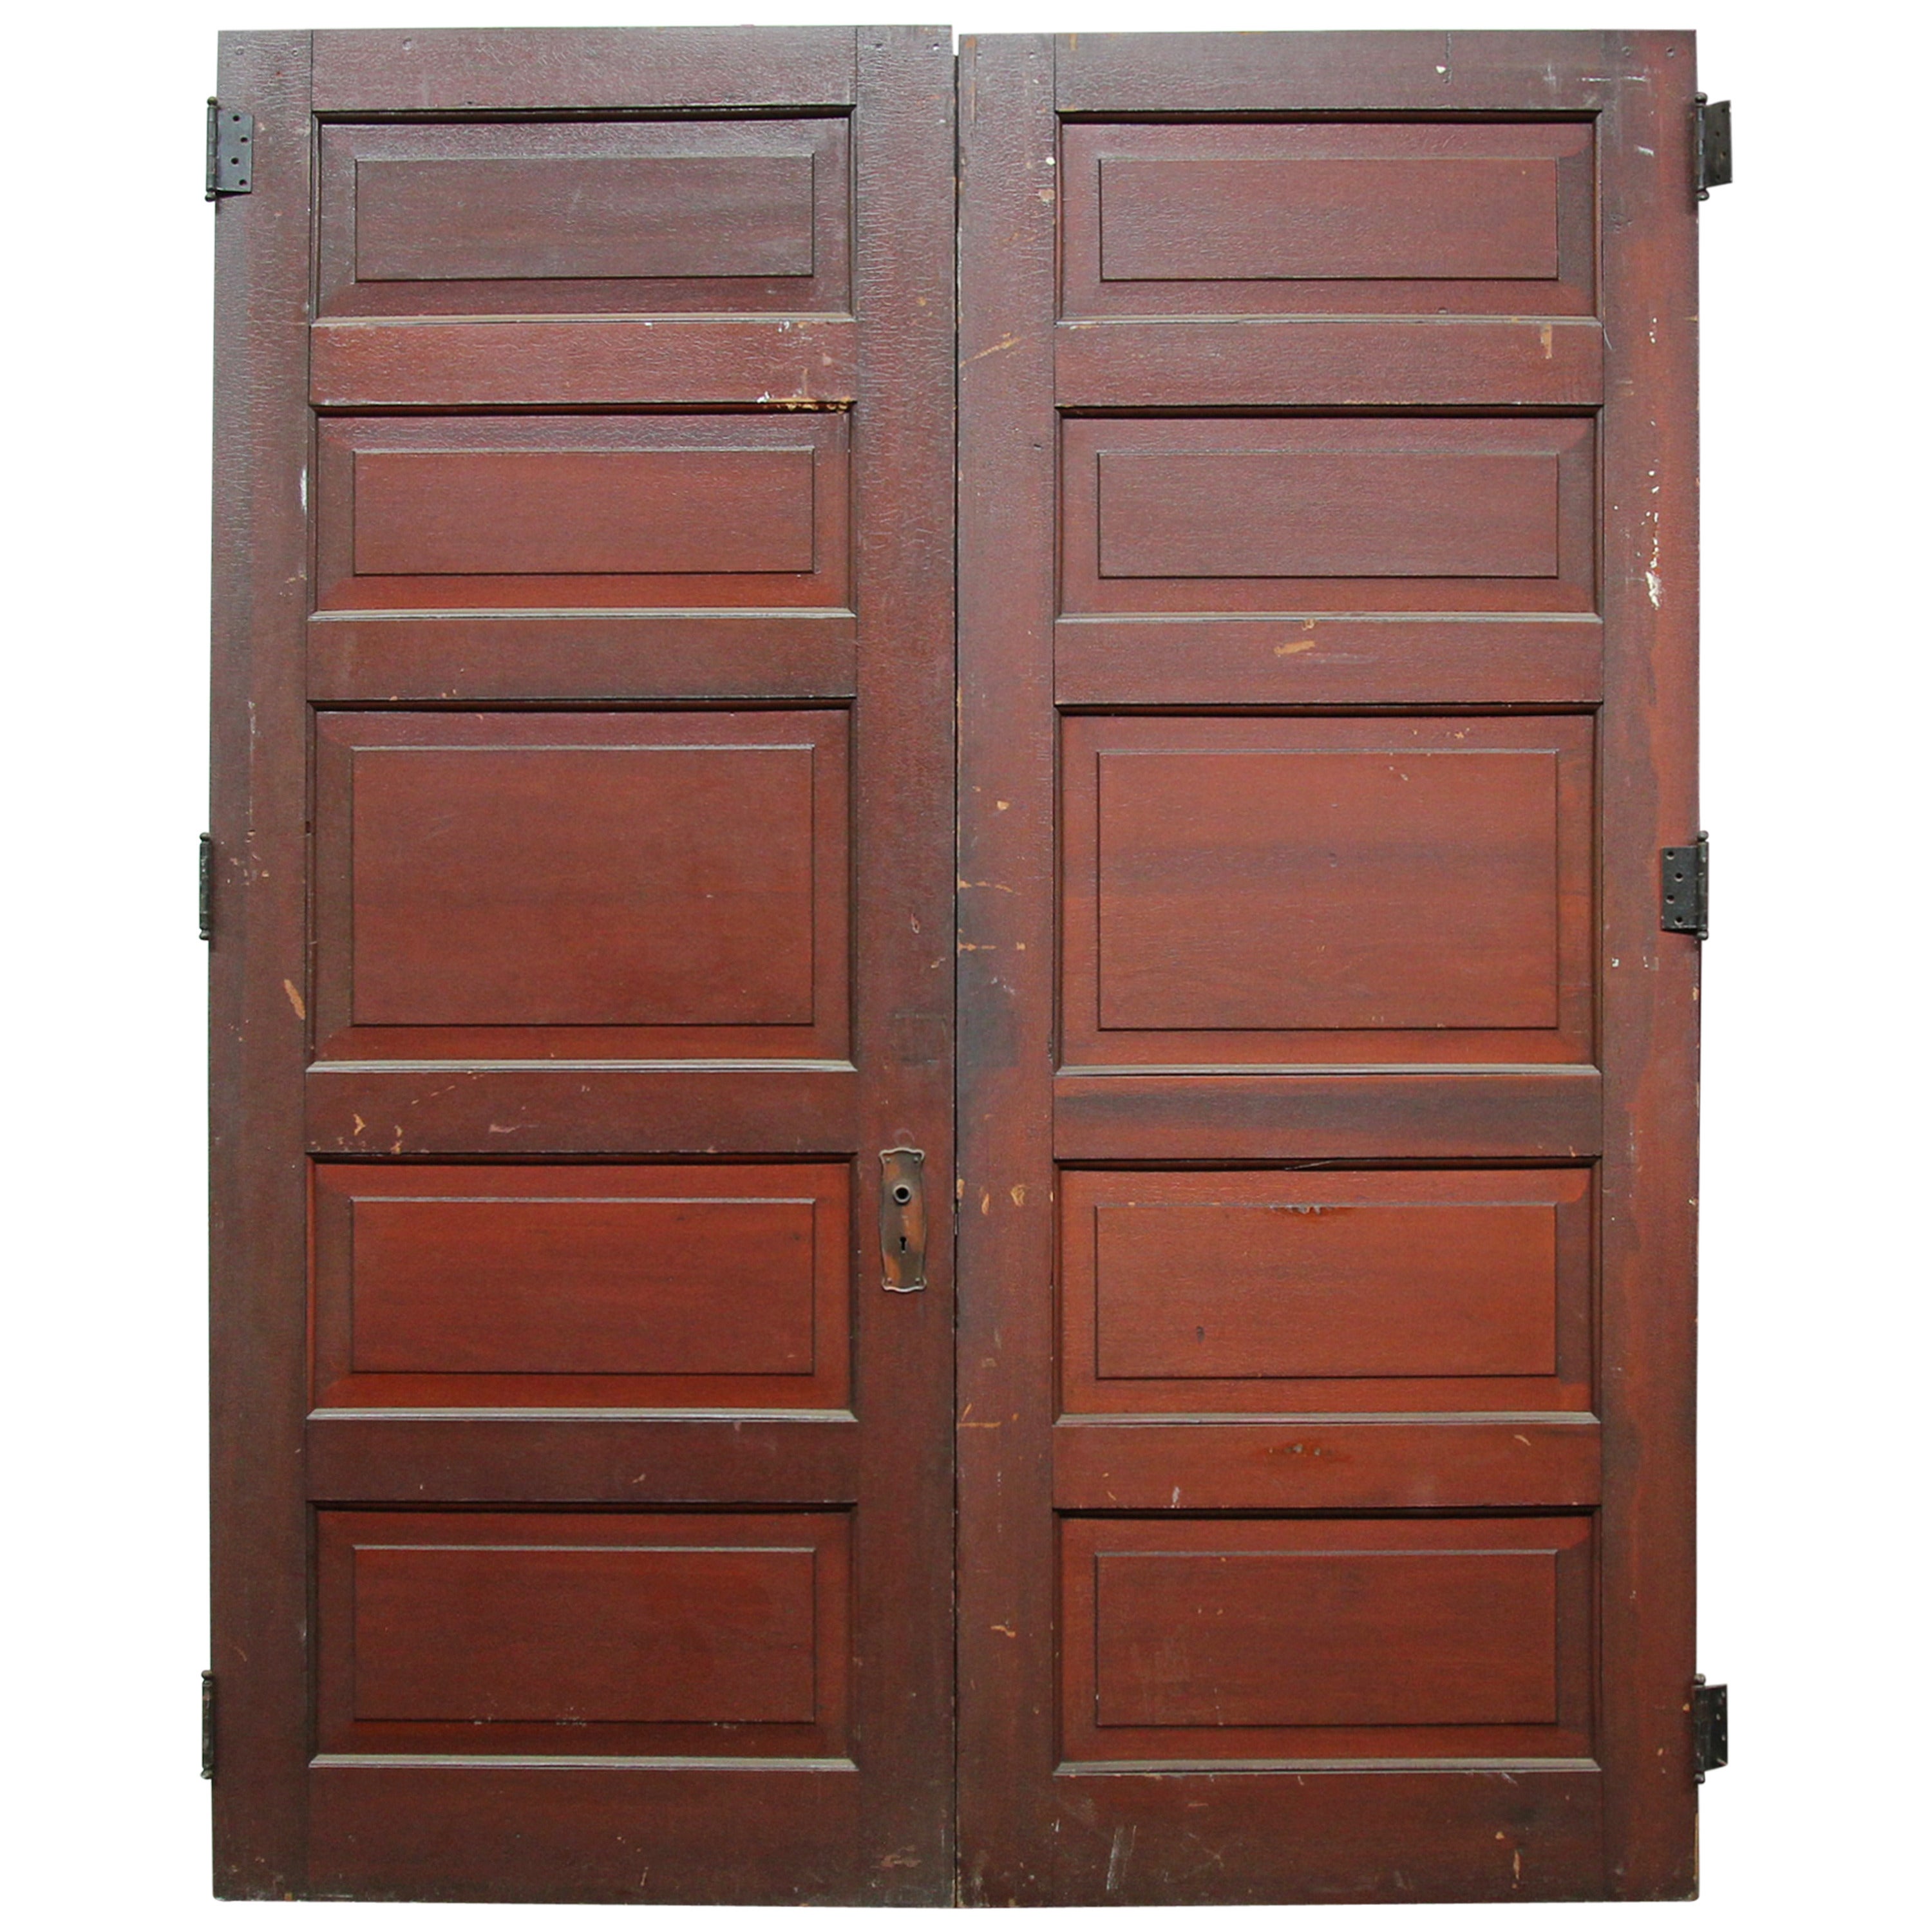 1920s Pair of Five-Panel Wooden Doors with Original Fumed Copper Hardware